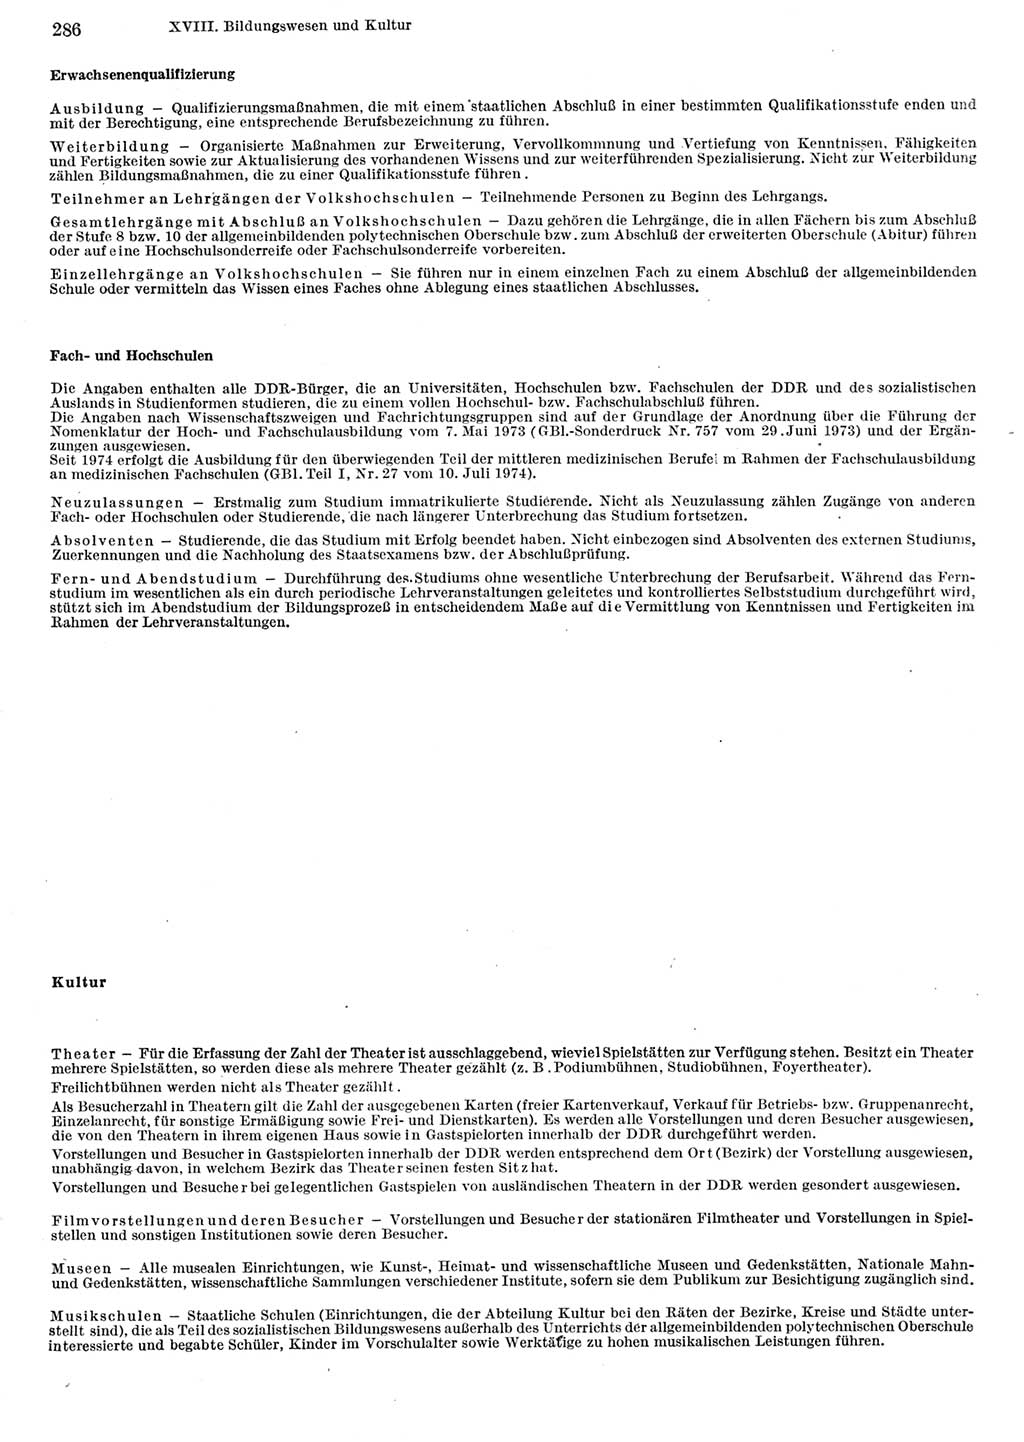 Statistisches Jahrbuch der Deutschen Demokratischen Republik (DDR) 1982, Seite 286 (Stat. Jb. DDR 1982, S. 286)